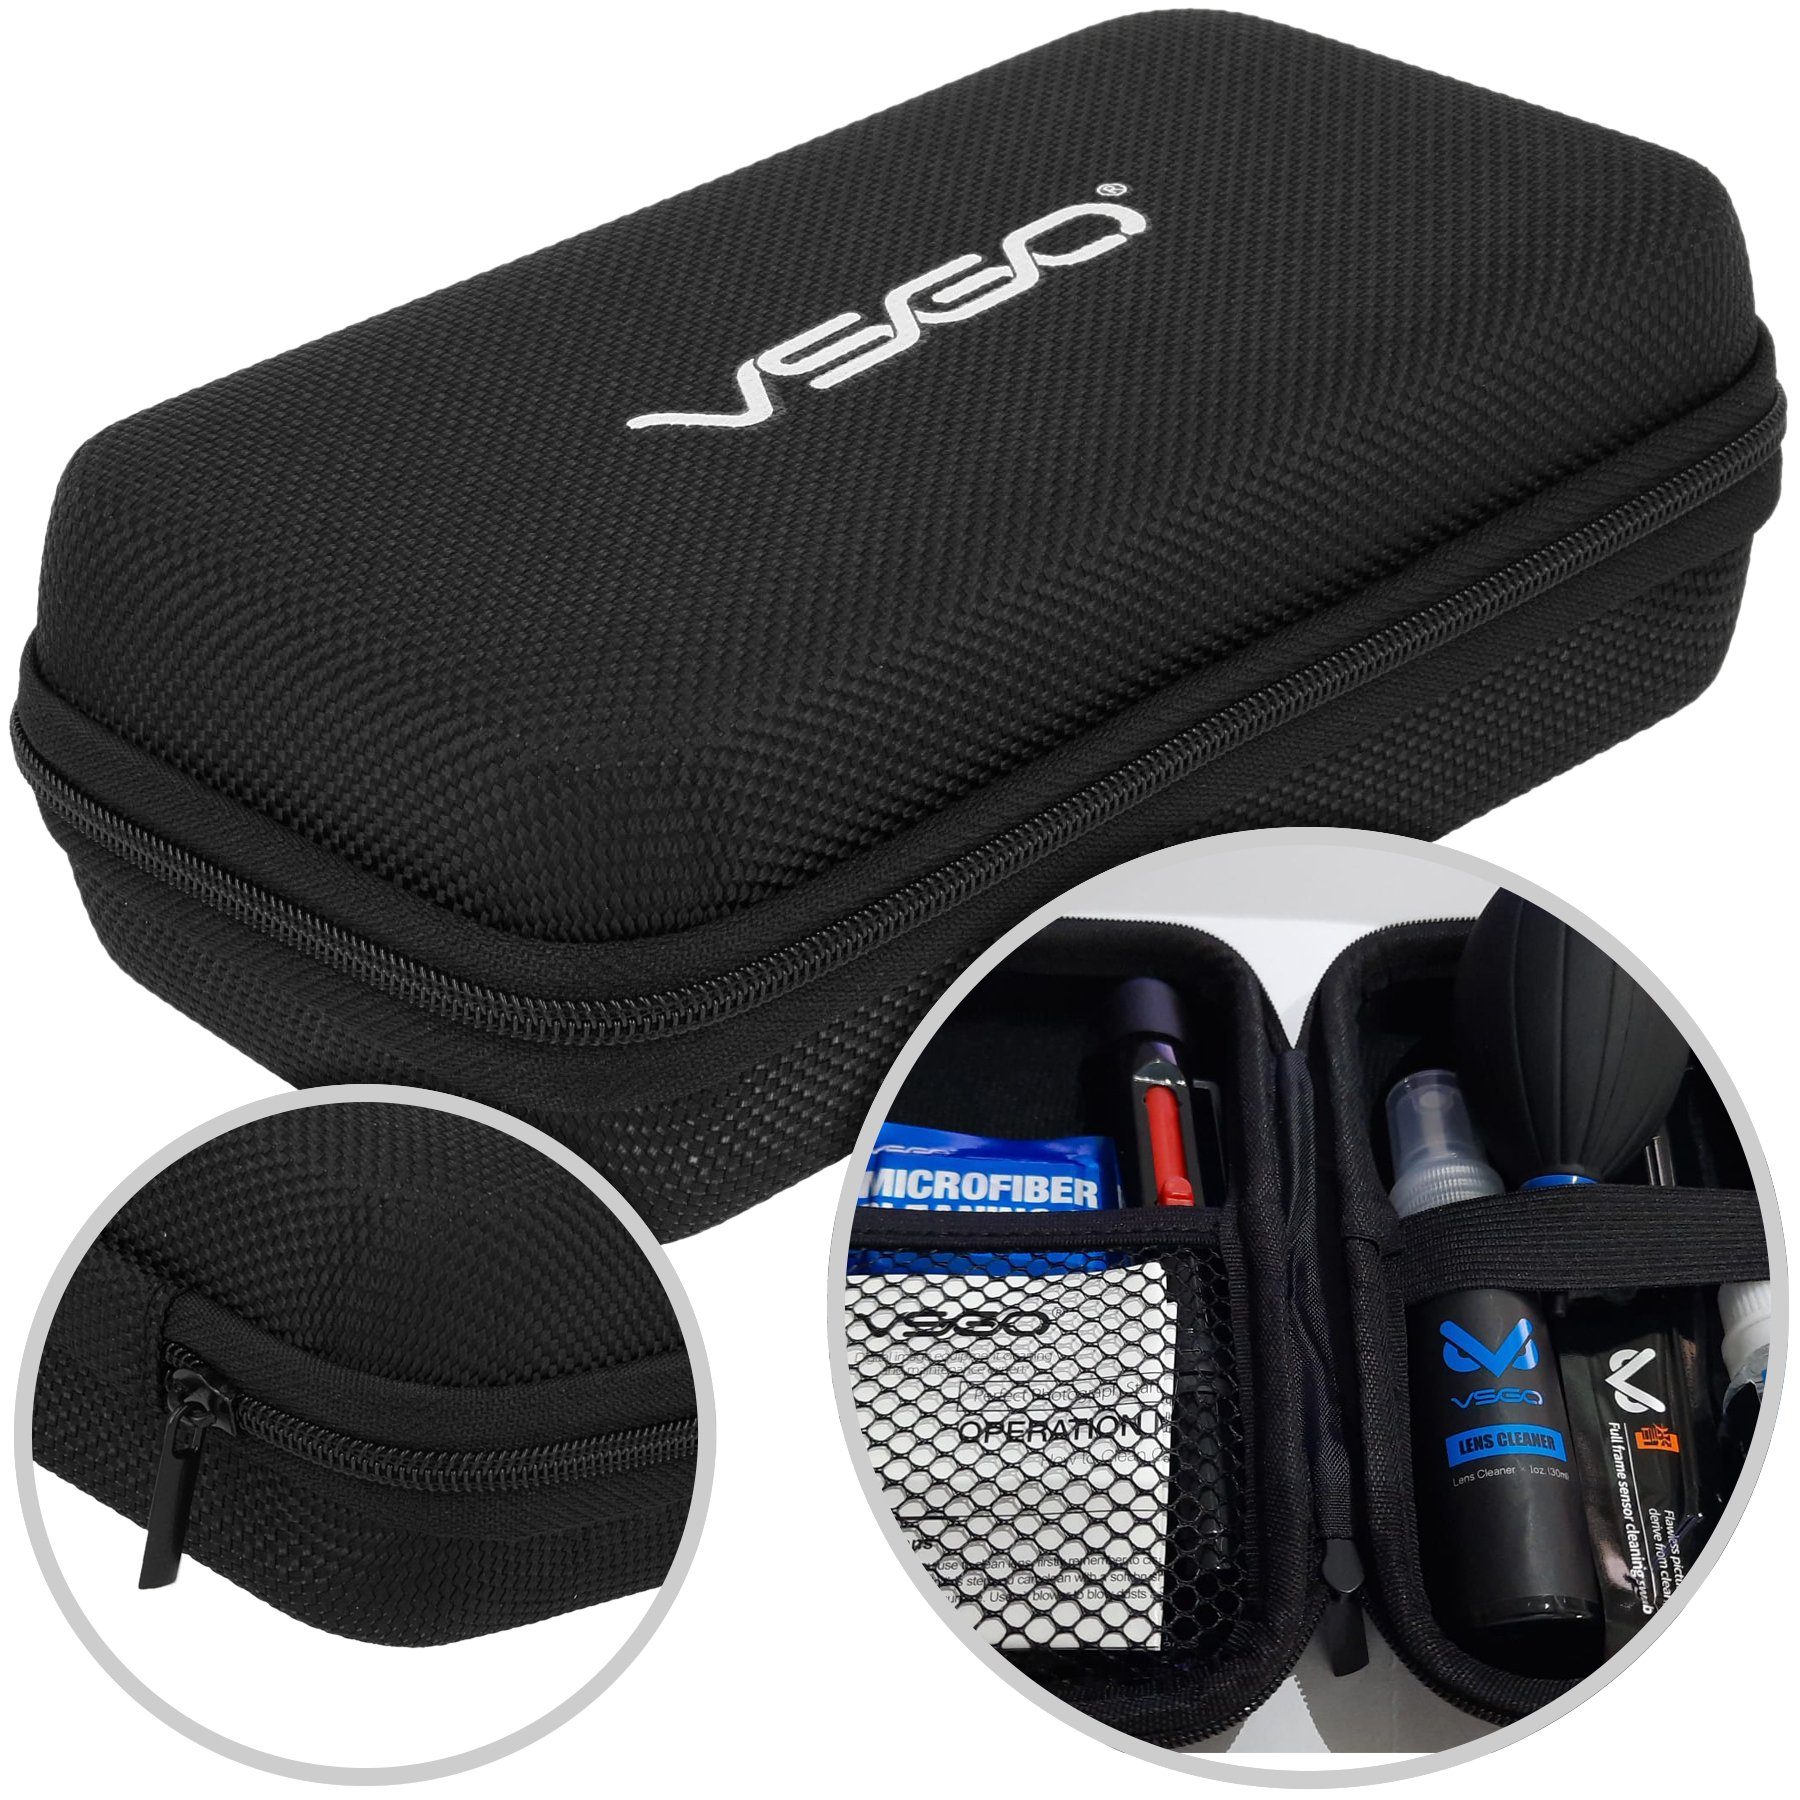 20-Teiliges - VSGO Reinigungskit Frame Sensor Reinigungs-Set Set VSGO Full Kameras mit für